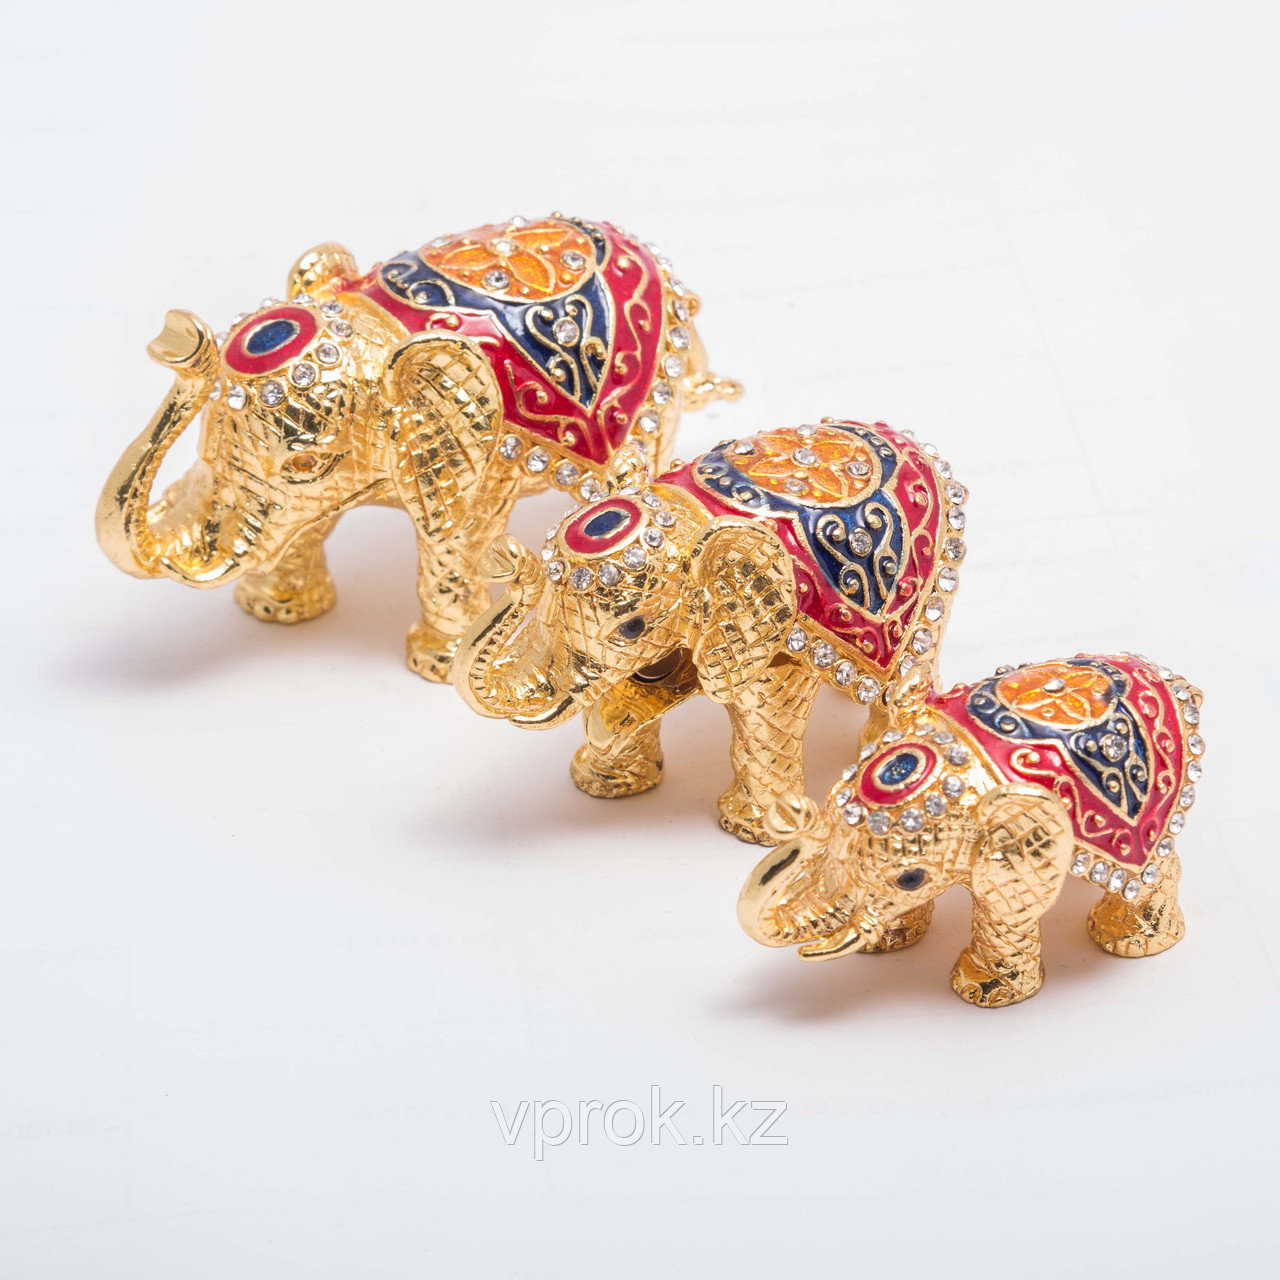 Набор сувениров-шкатулок "Три индийских слоника" 